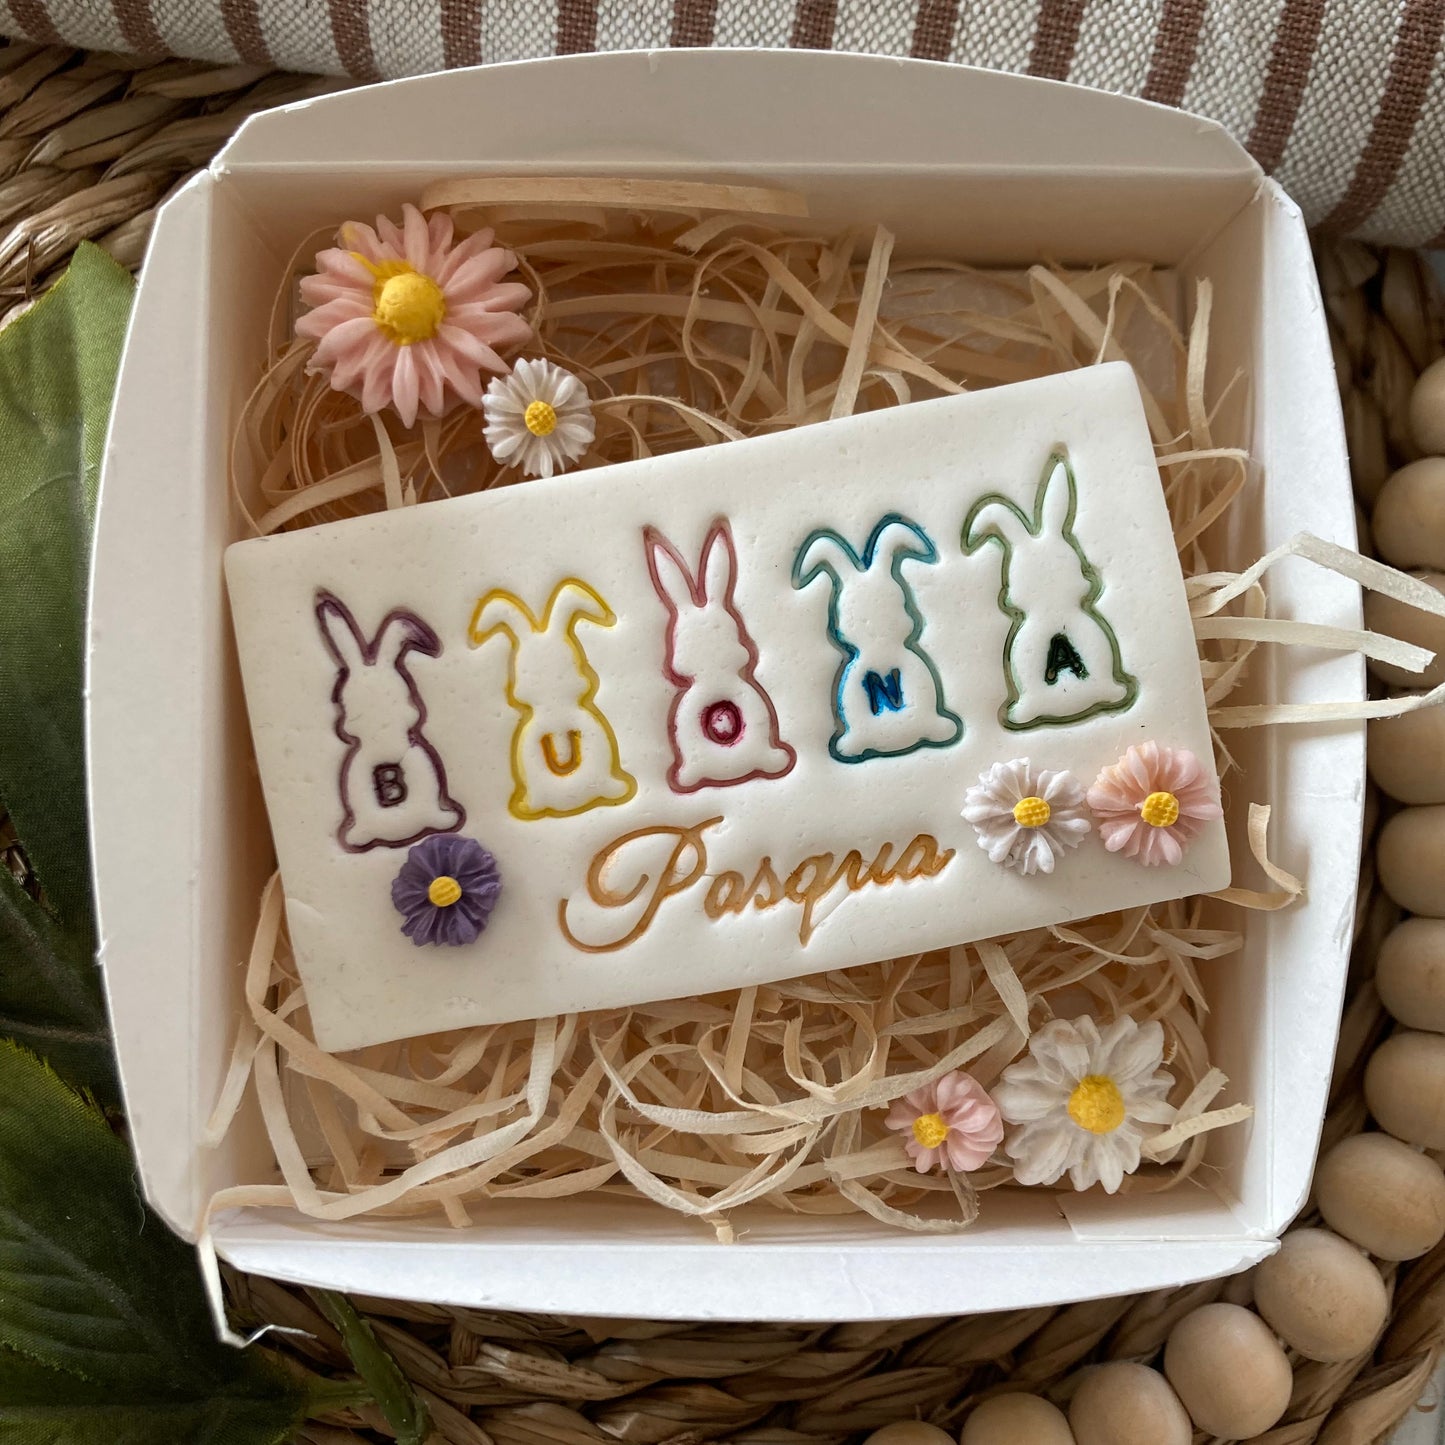 Buona Pasqua con Coniglietti - Pasqua - Cookies cutter - Tagliabiscotti per decorazione biscotti o decorazioni in cake design